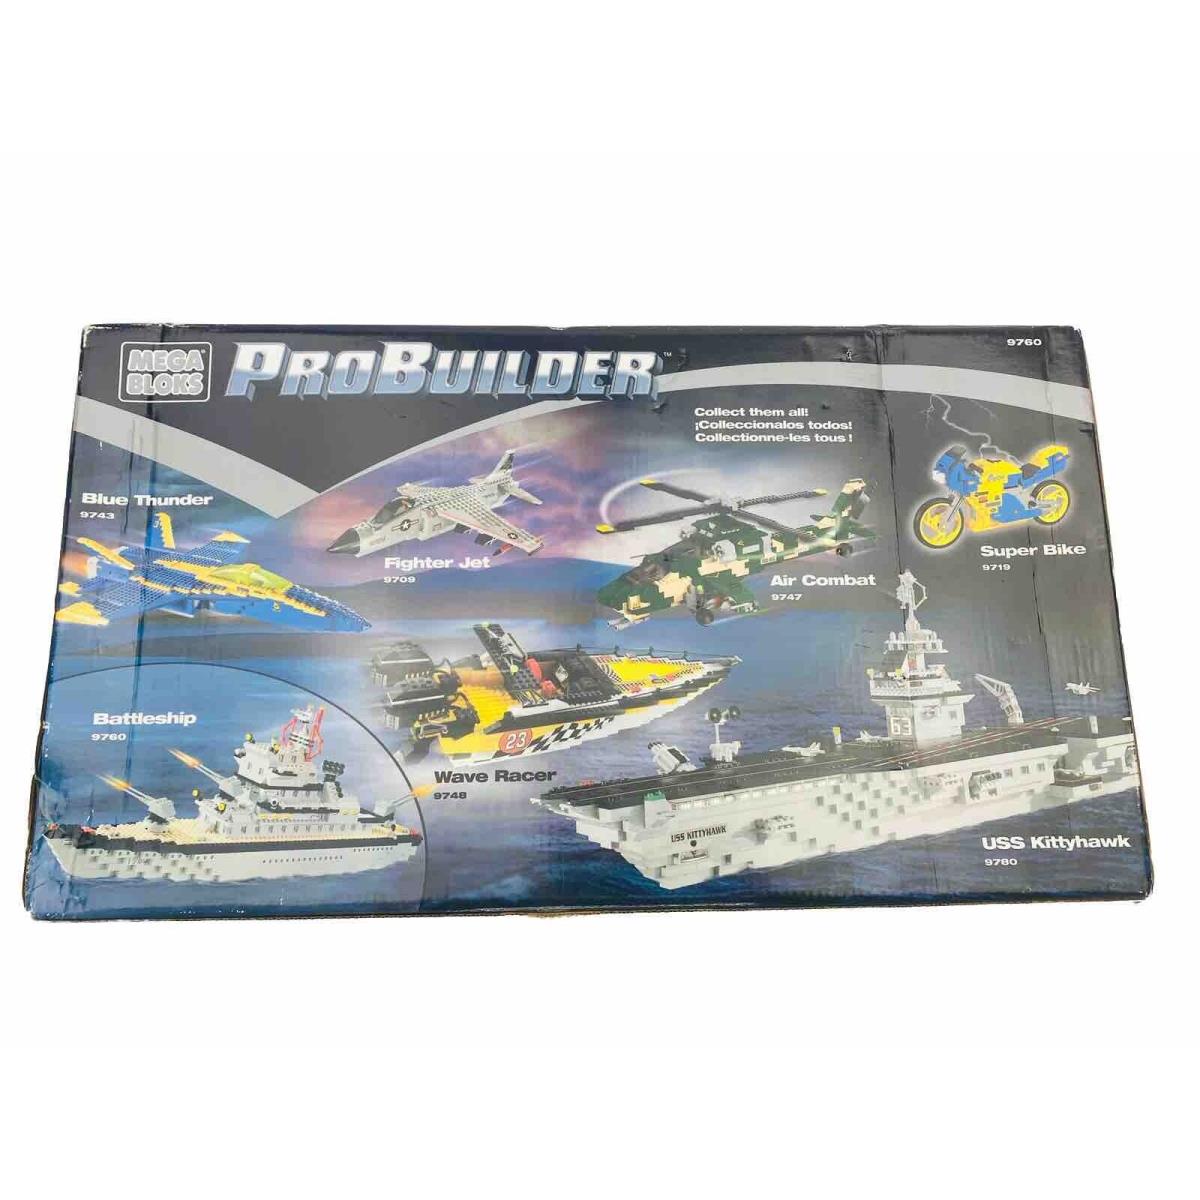 Mega Bloks Battleship 9760 Pro Builder